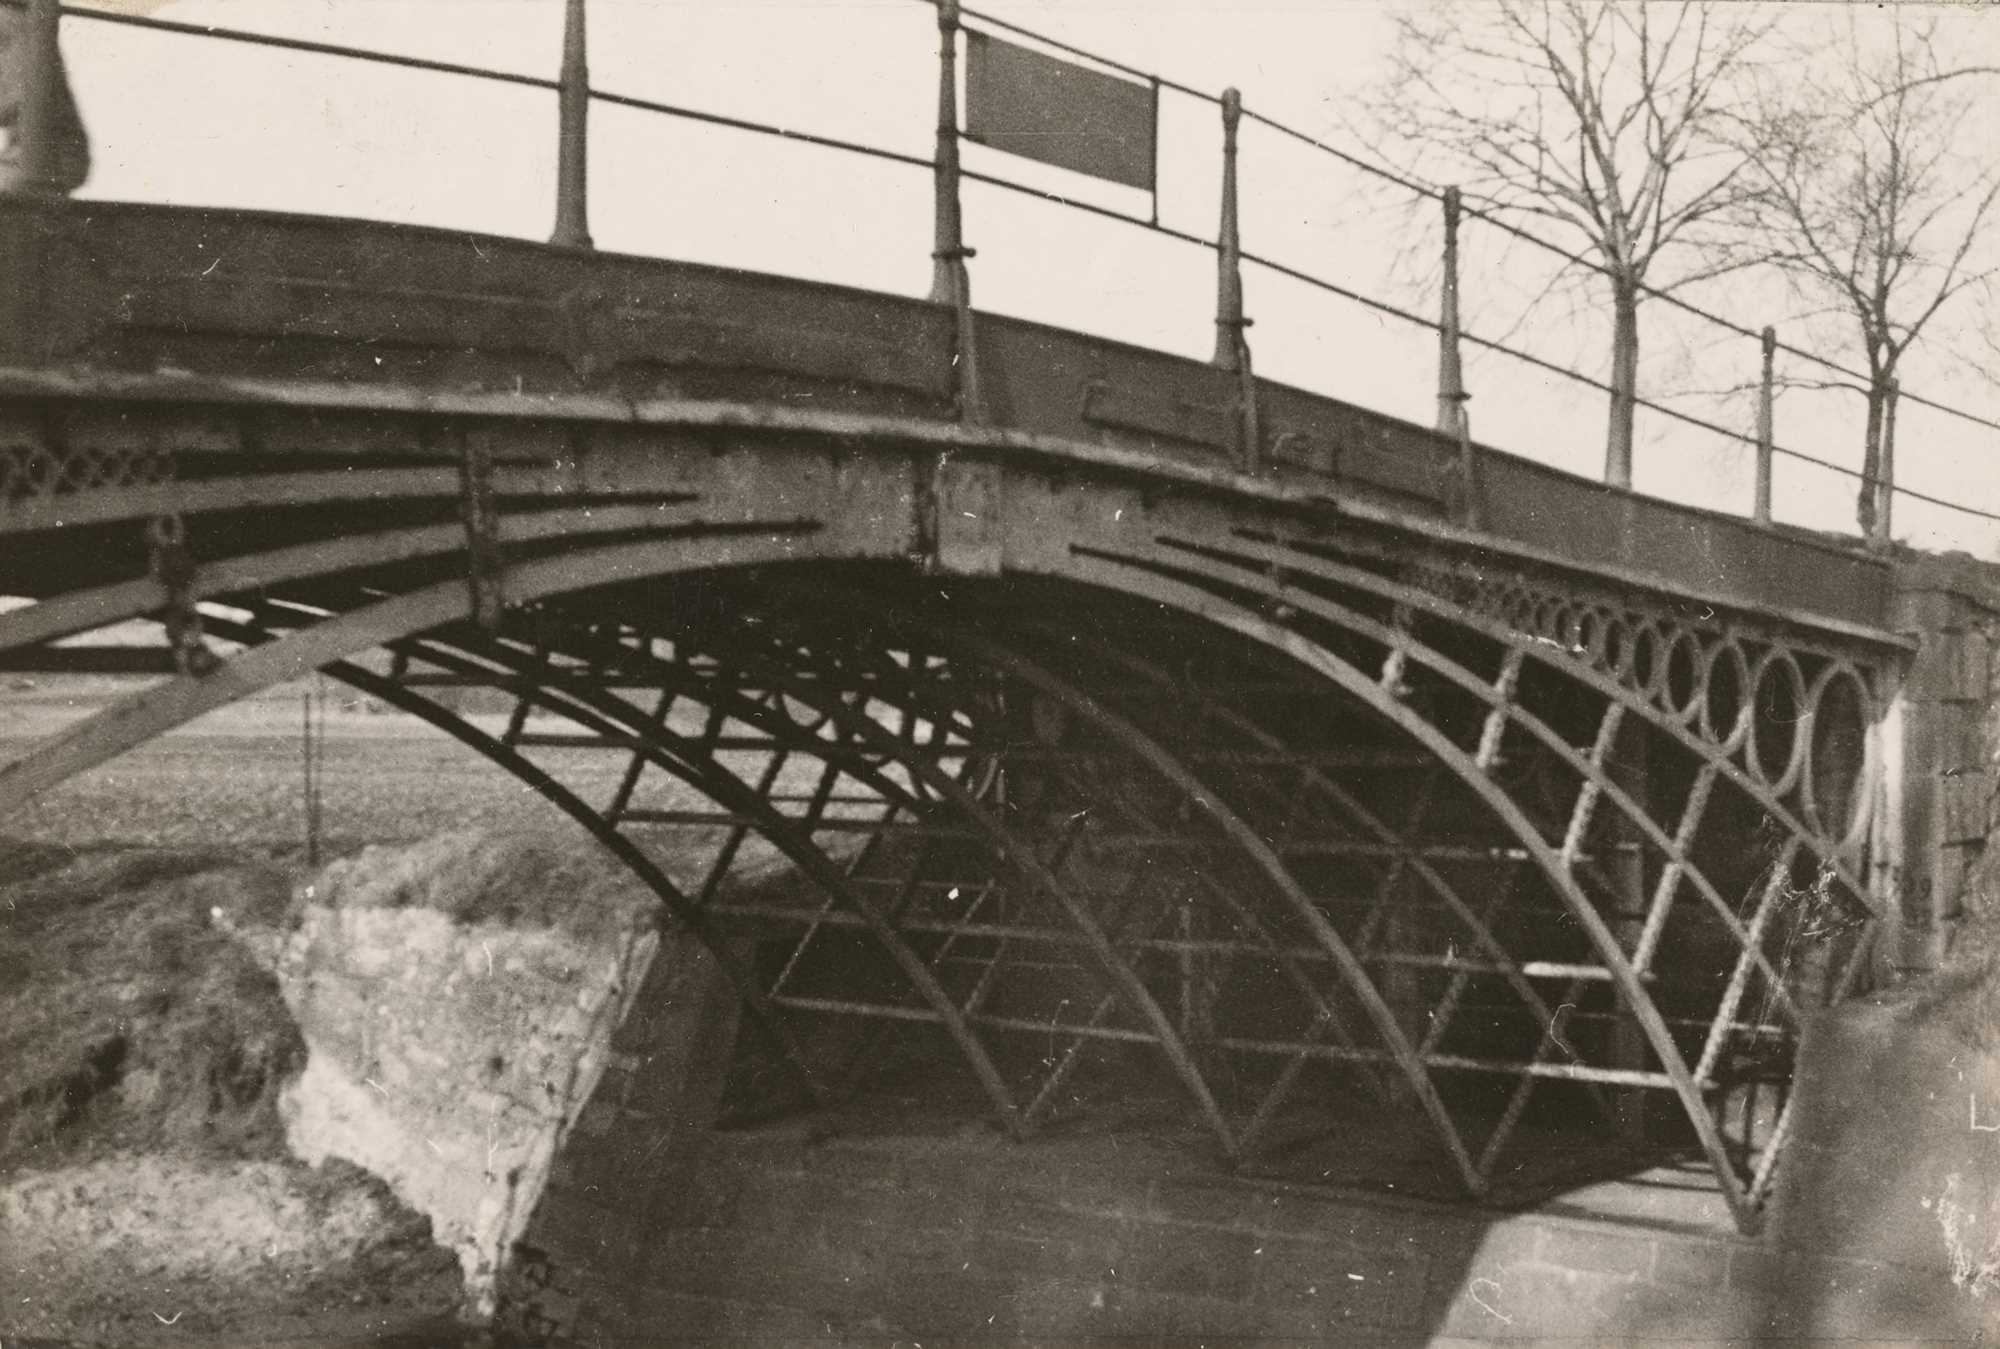 zelazny most przed1945 (2)